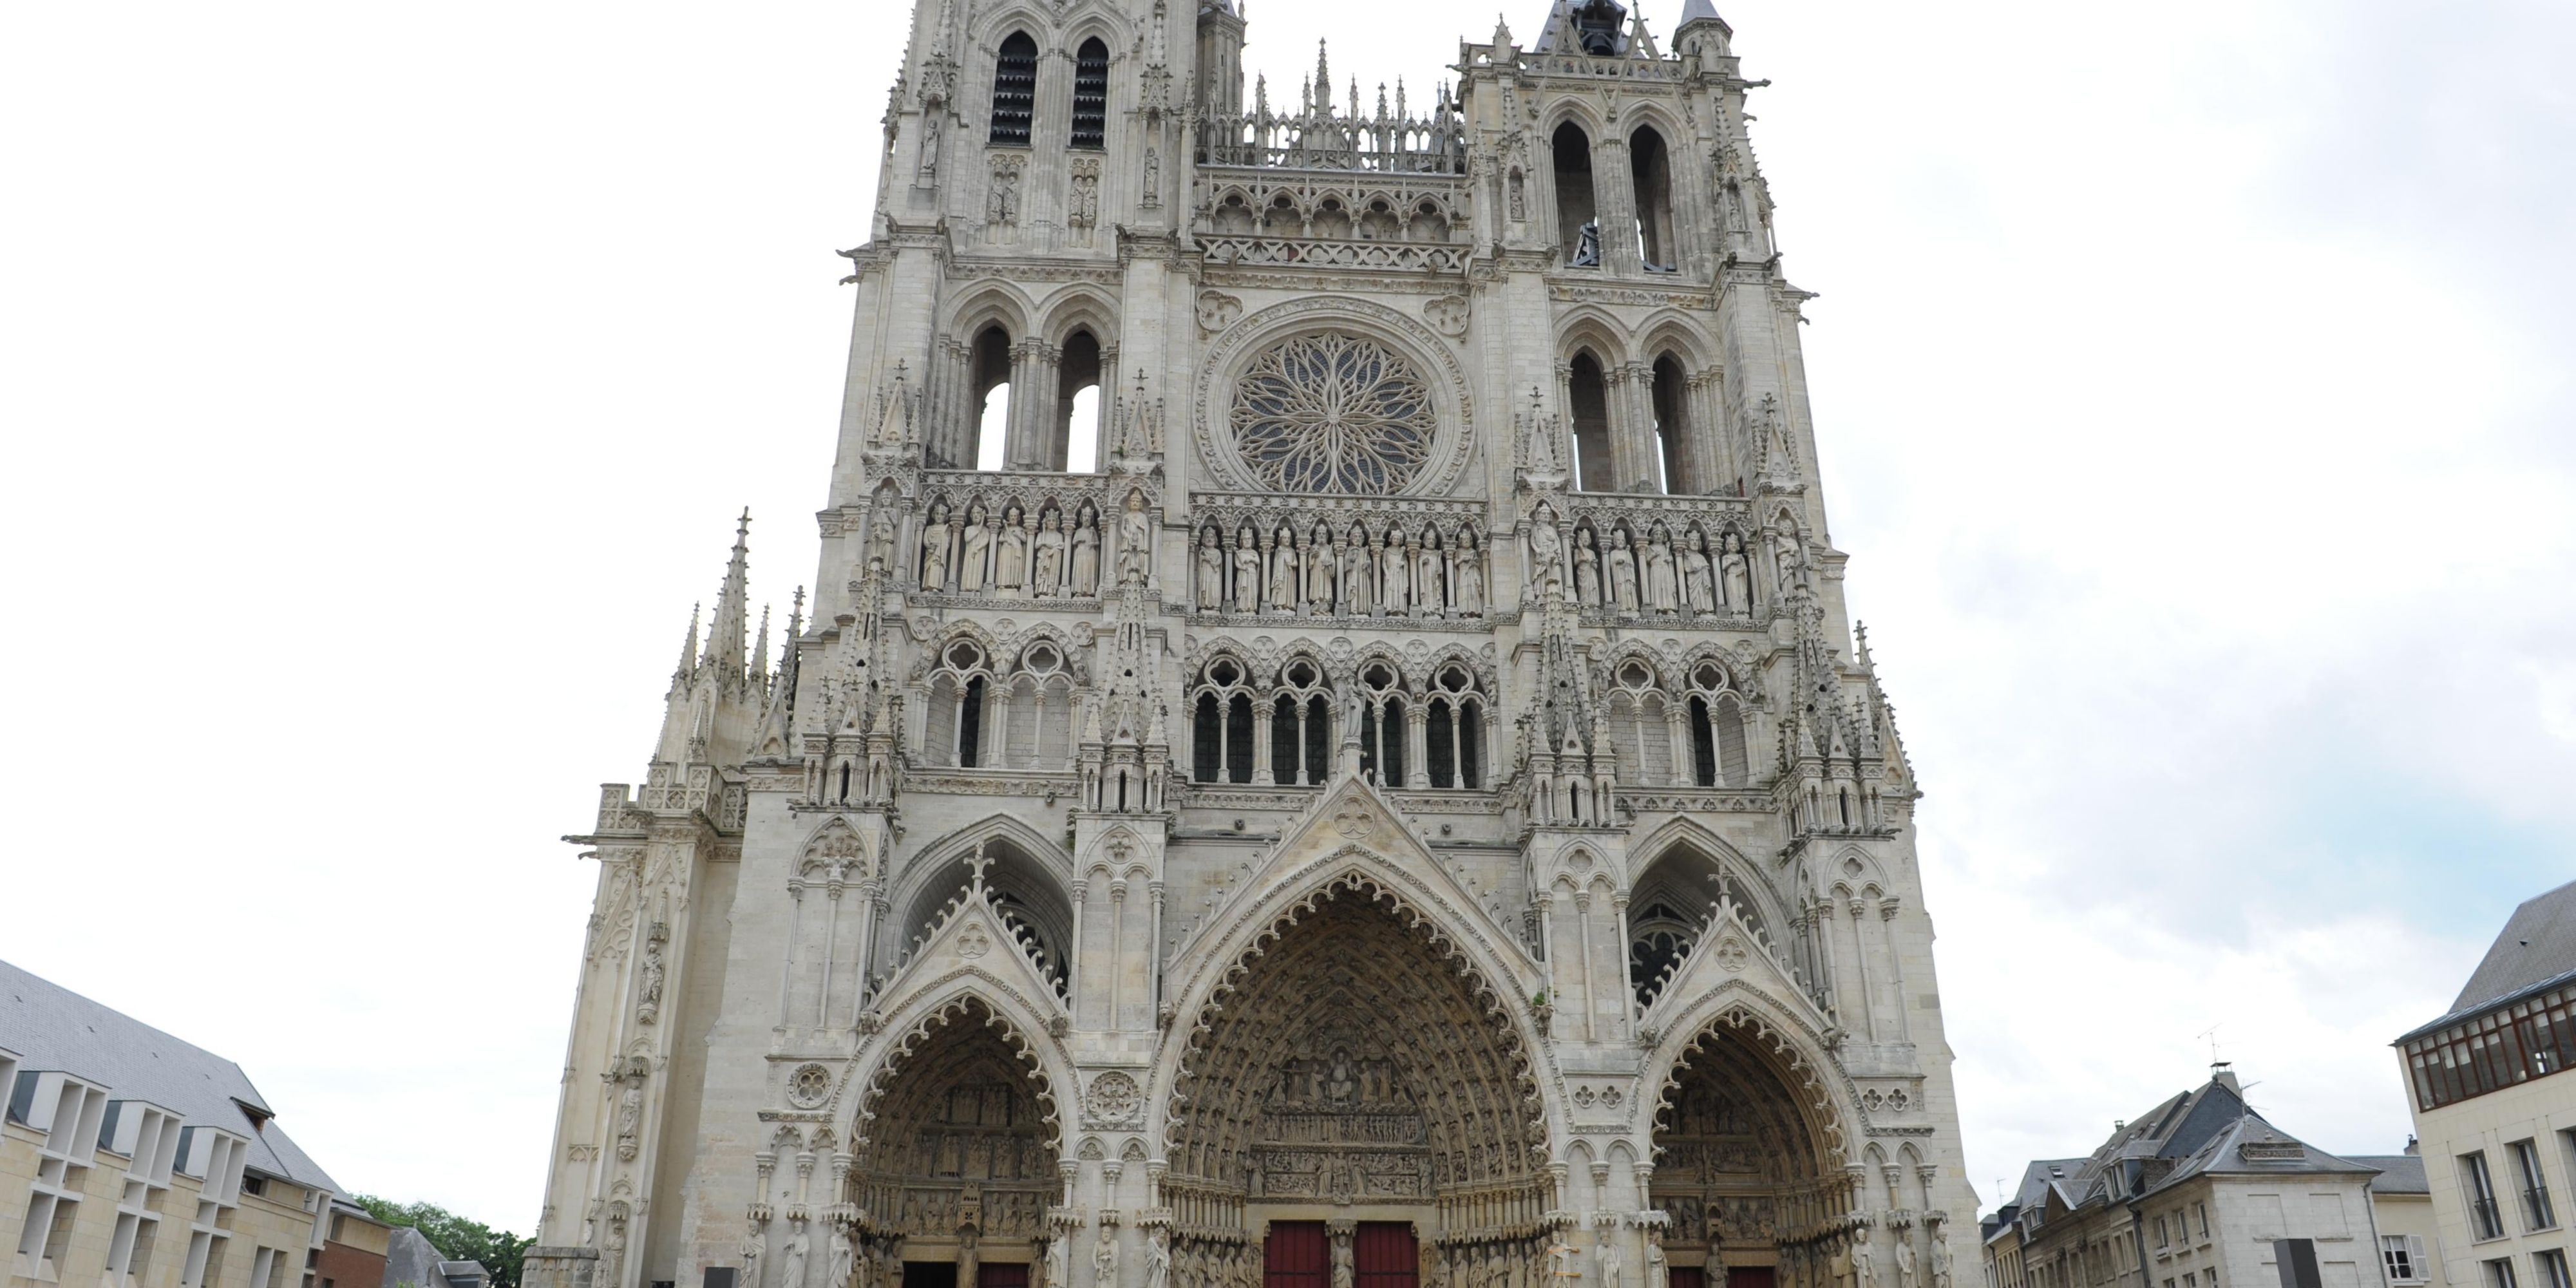 Doublement inscrite au Patrimoine mondial de l'UNESCO. Véritable prouesse technique, la cathédrale Notre-Dame d'Amiens témoigne d'une grande harmonie architecturale. 
Construite de 1220 à 1288, ses dimensions en font un des plus vastes édifices gothiques jamais élevés et Sa statuaire est aussi remarquable que son architecture.